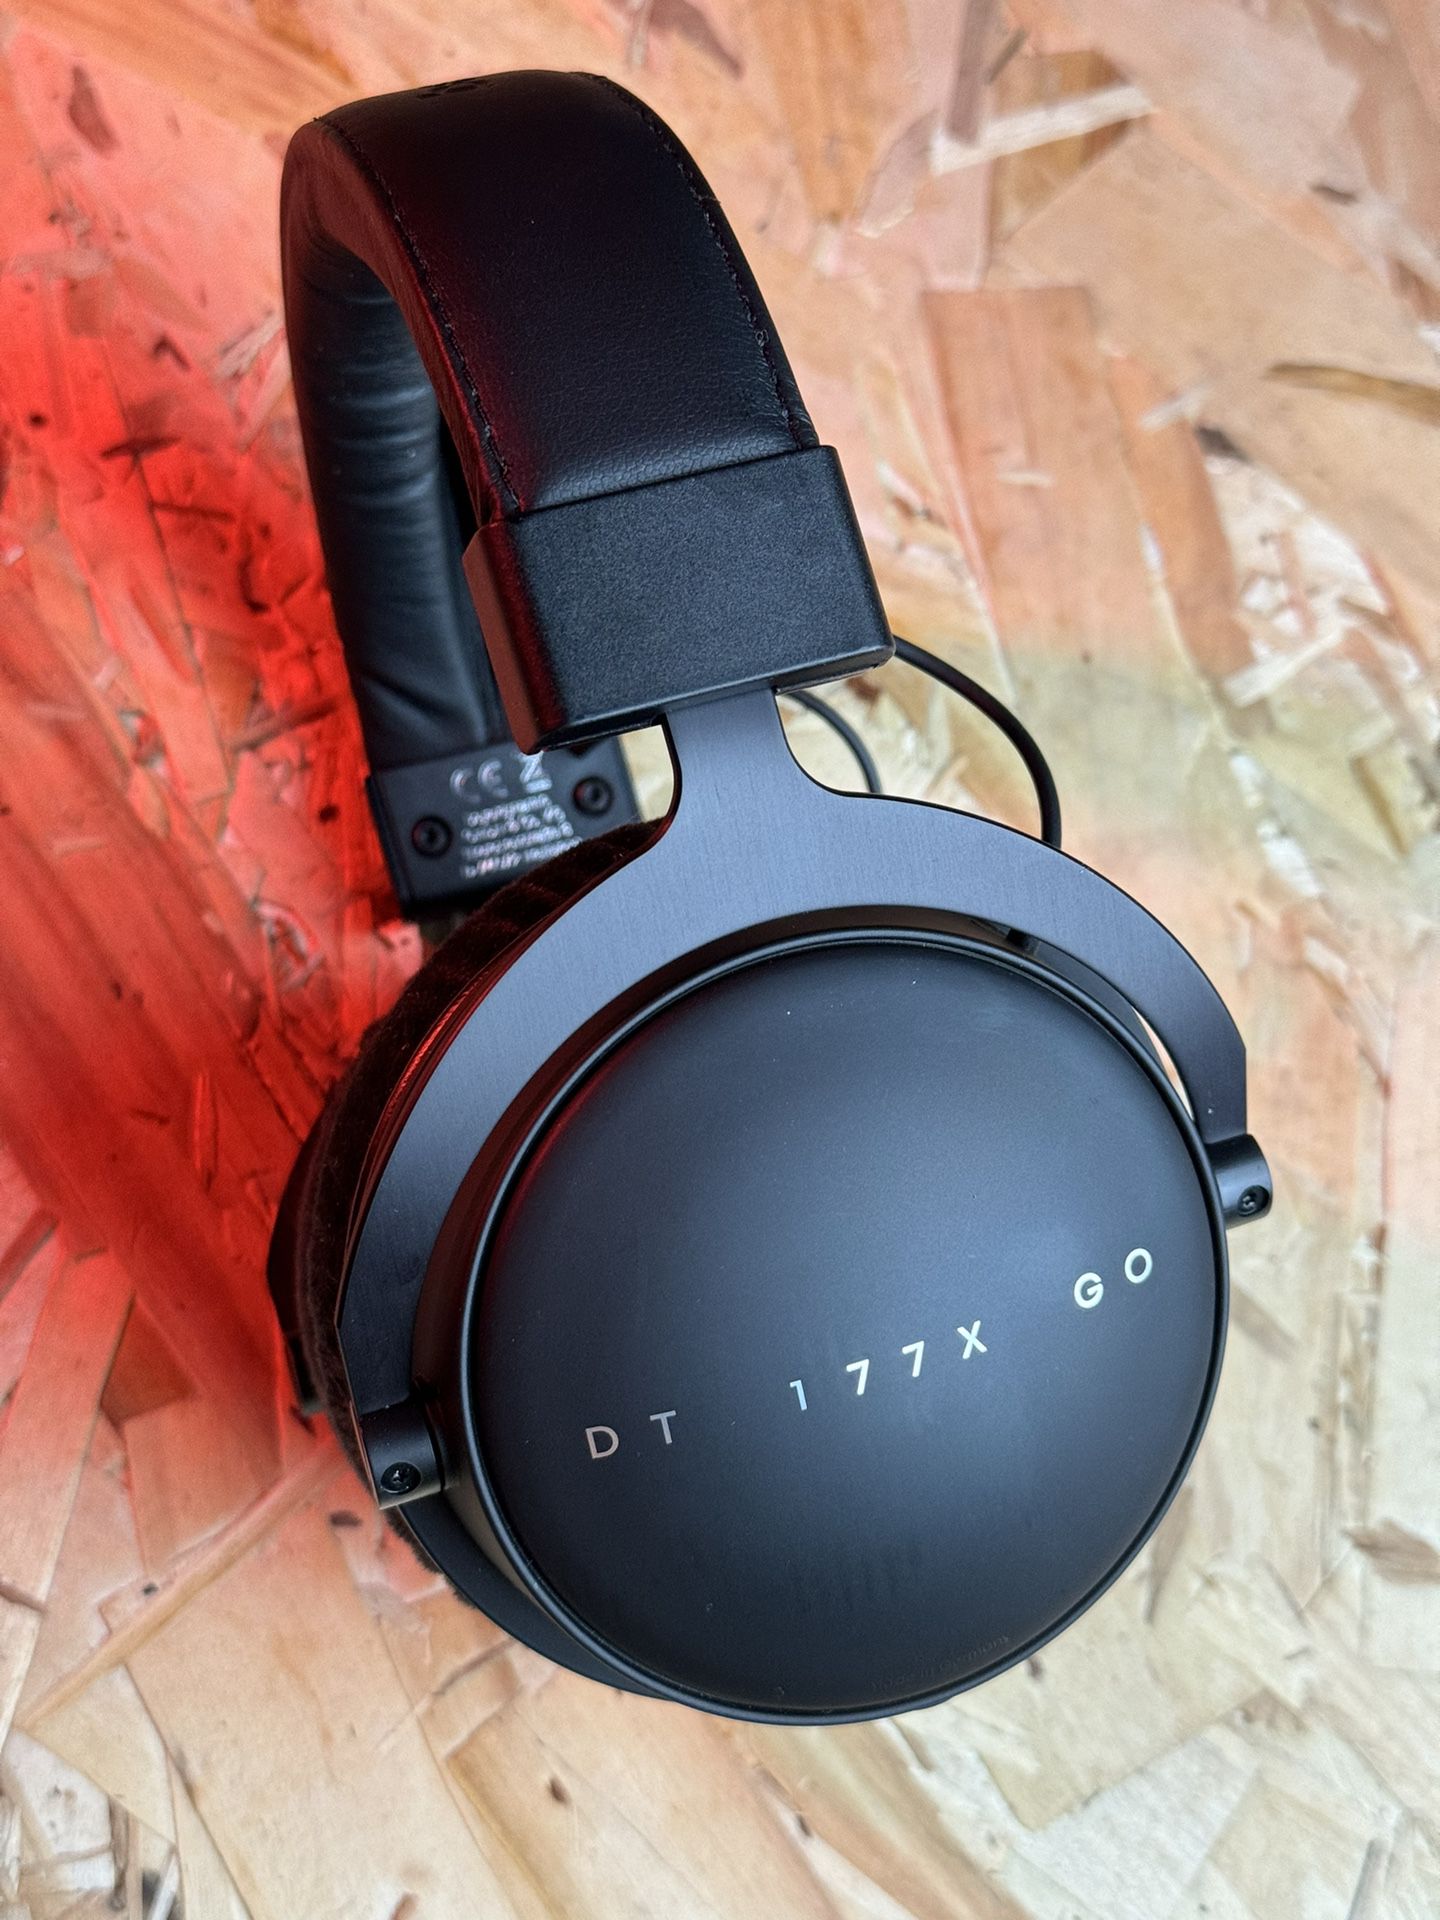 Beyerdynamic DT177x Go headphones (drop collab)